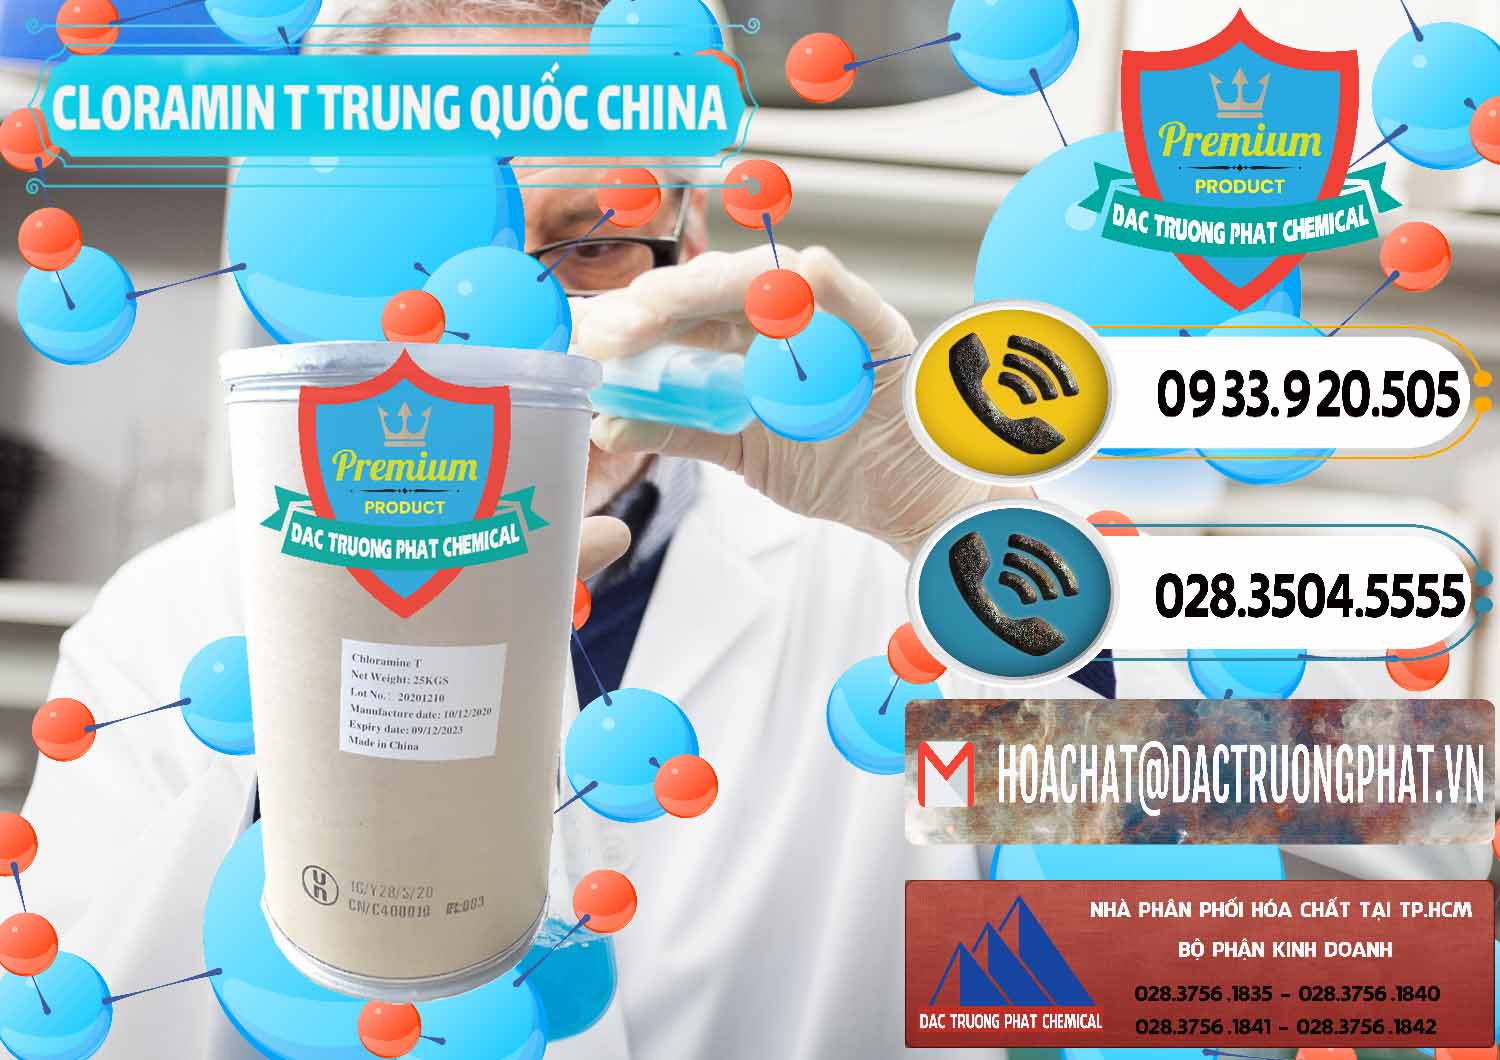 Cty chuyên bán _ cung ứng Cloramin T Khử Trùng, Diệt Khuẩn Trung Quốc China - 0301 - Cty nhập khẩu và phân phối hóa chất tại TP.HCM - hoachatdetnhuom.vn